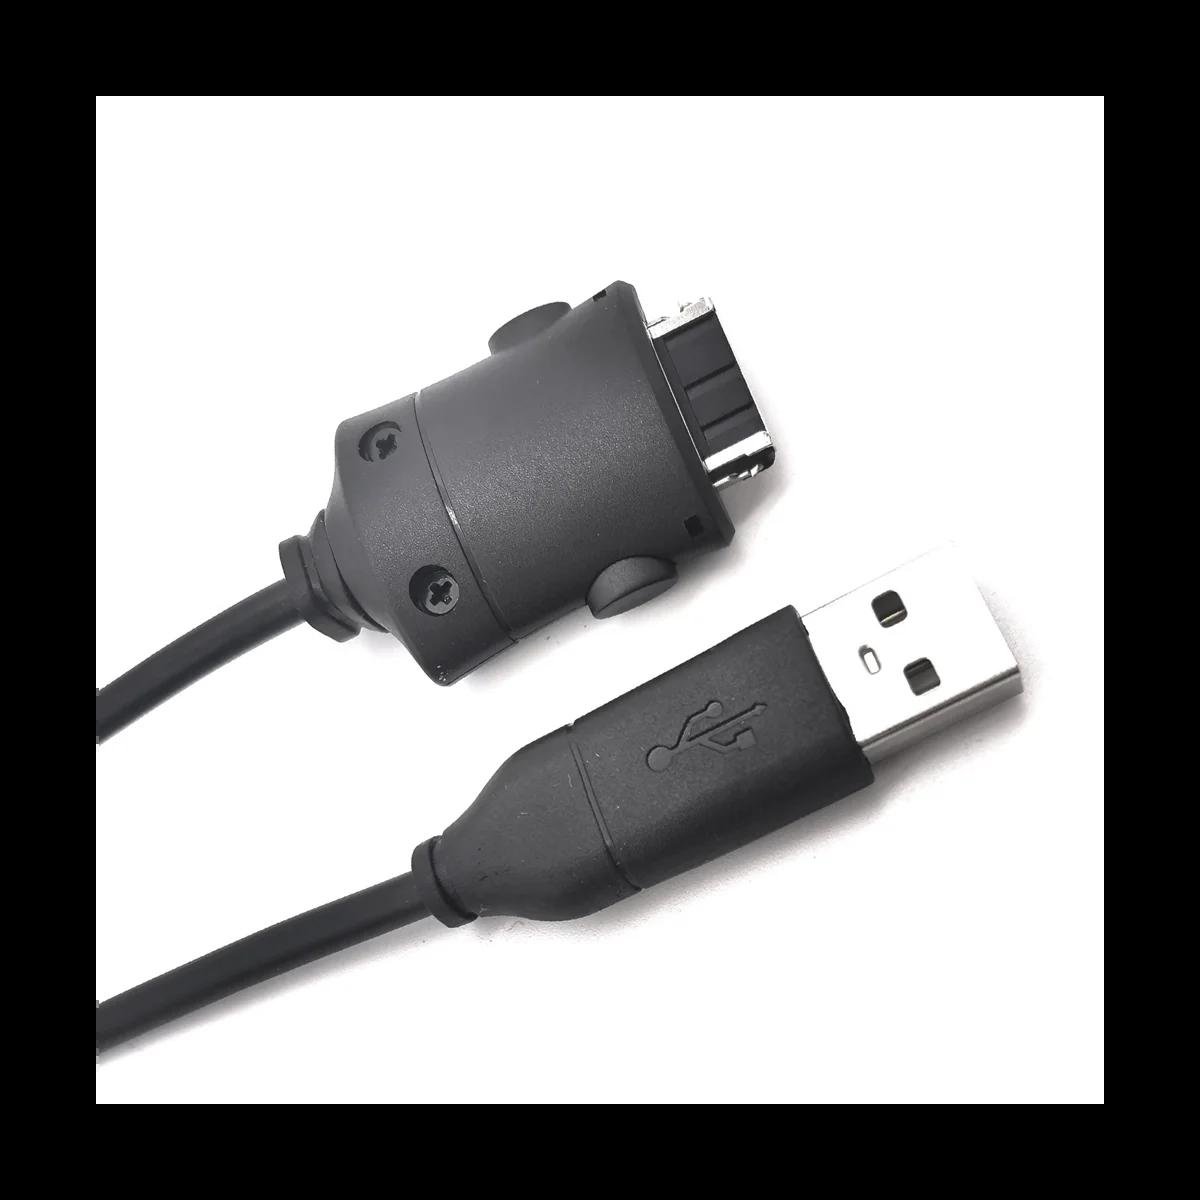  ī޶ SUC-C2 USB  ̺,   ڵ, NV3, NV5, NV7, I5, I6, I7, I70, NV20, L70, L73, L74, L7